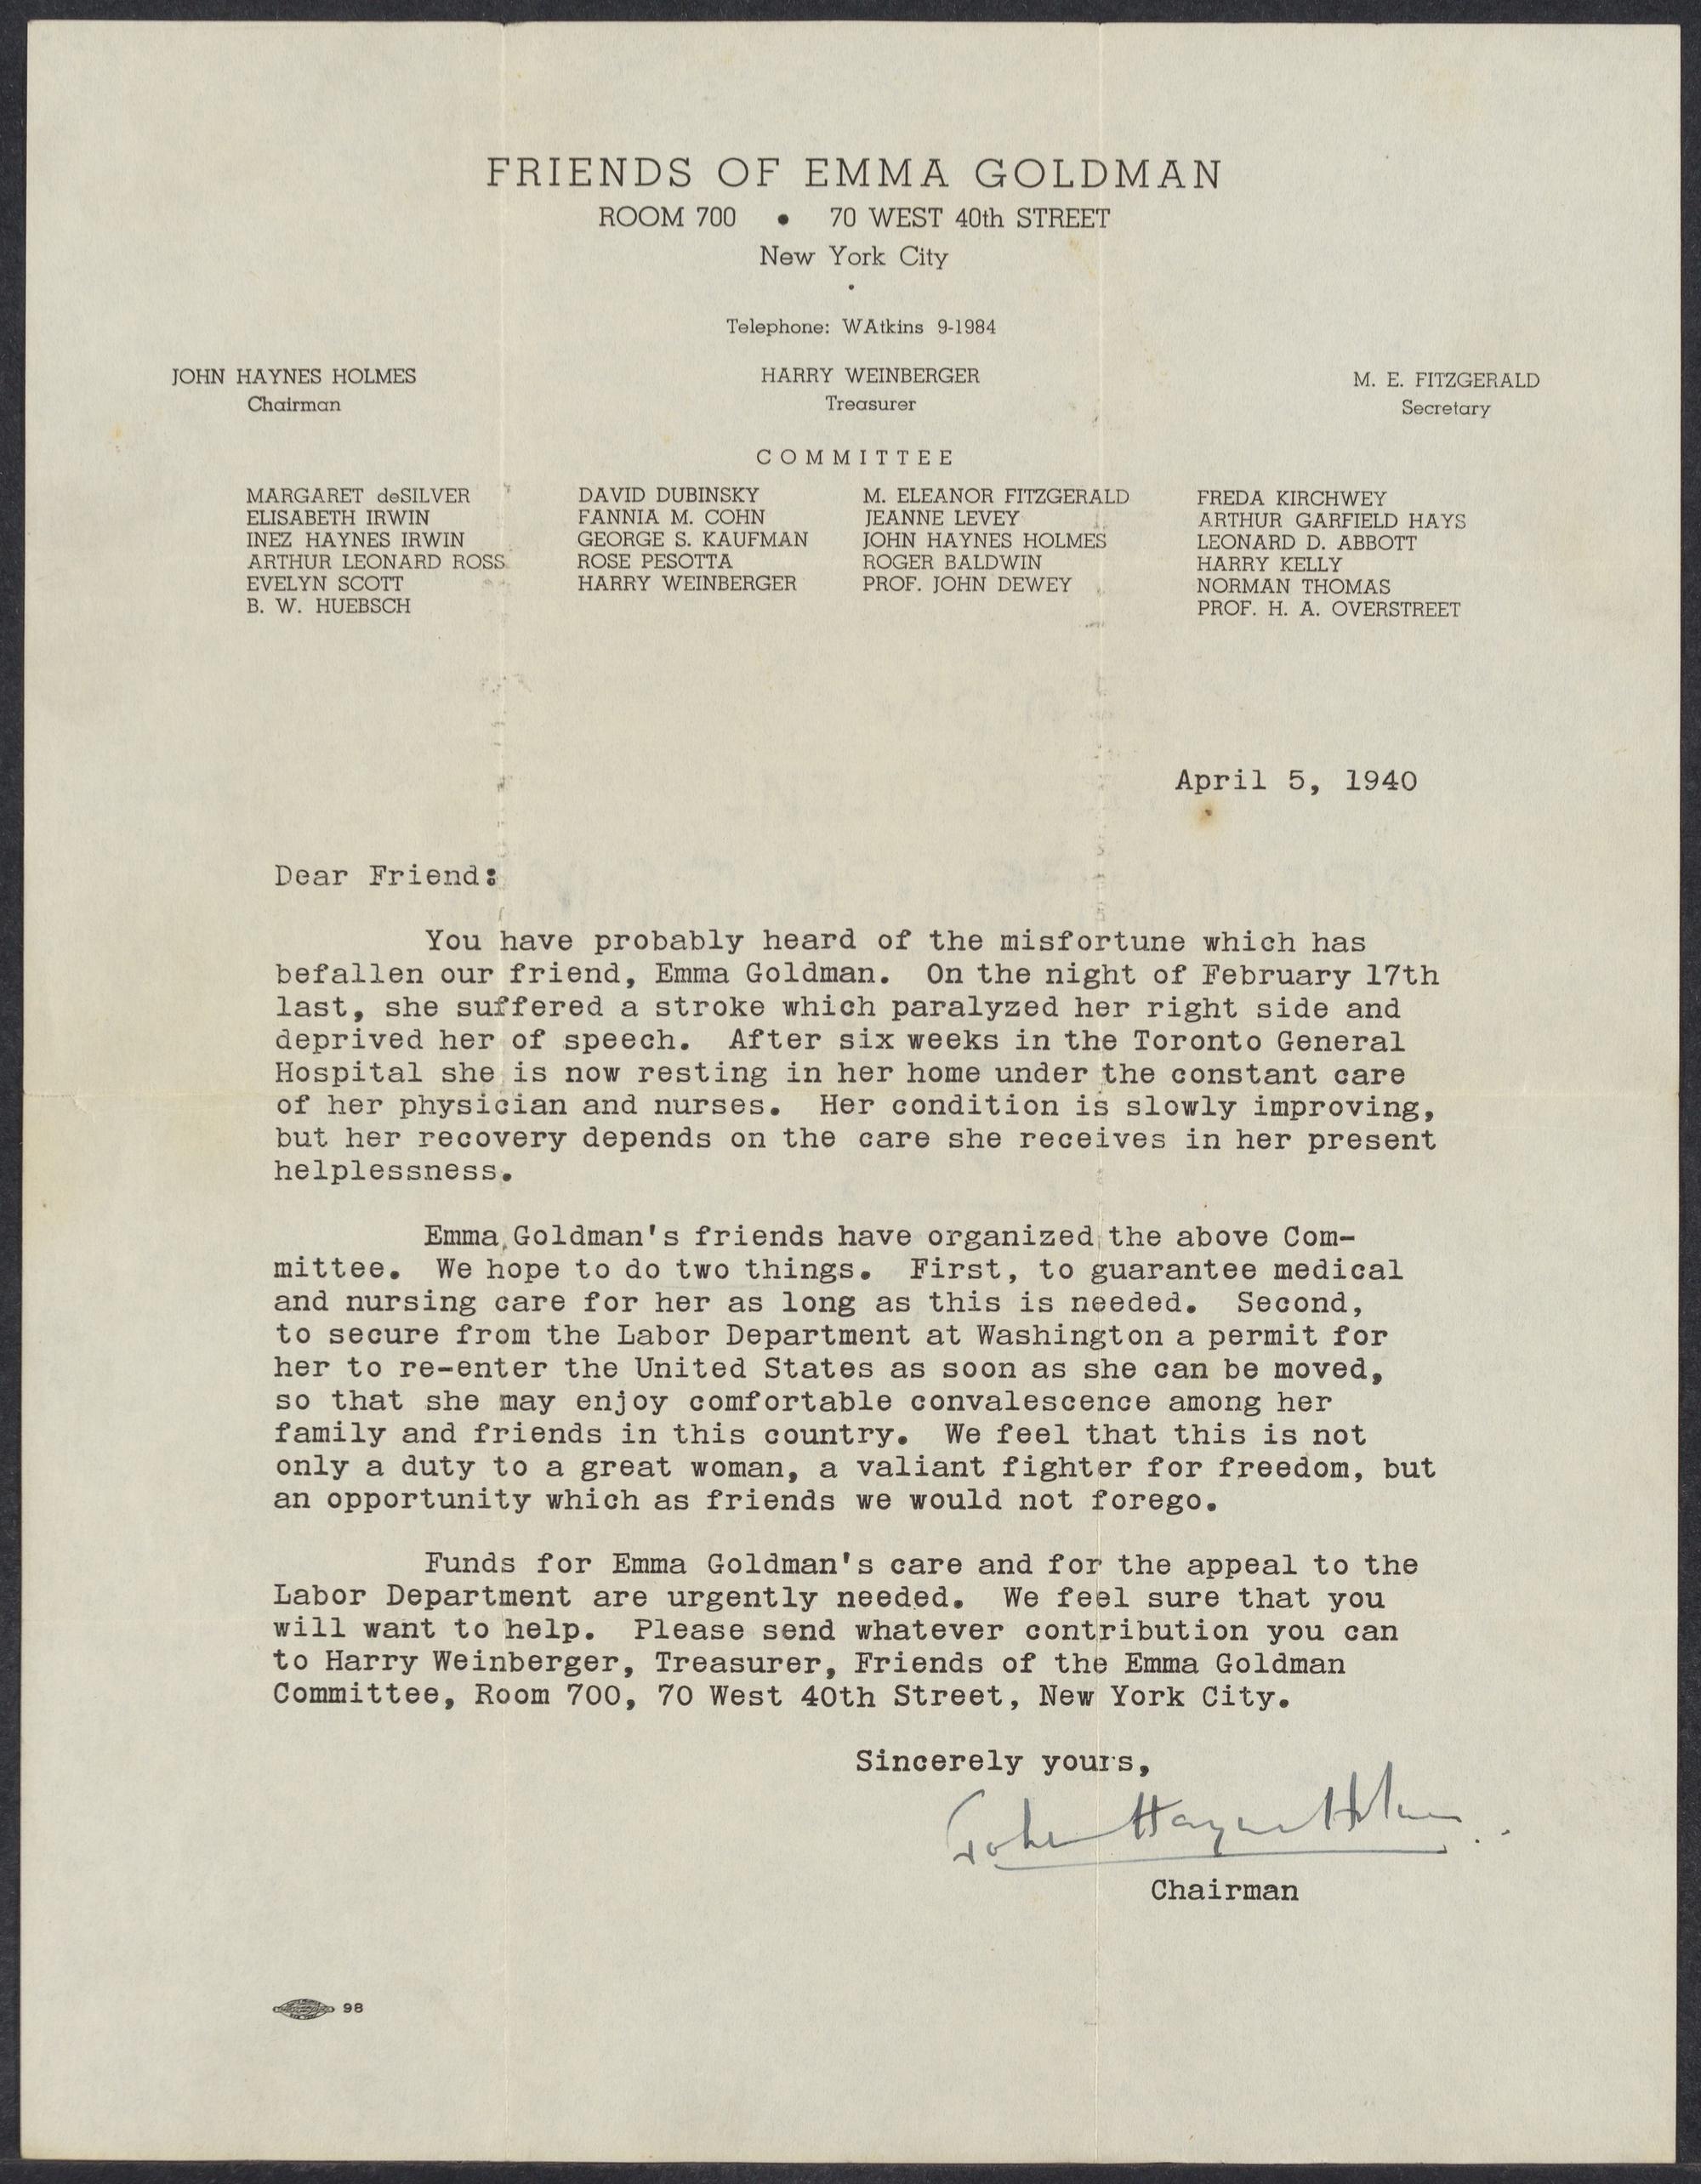 Carta del Comité de Amigos de Emma Goldman